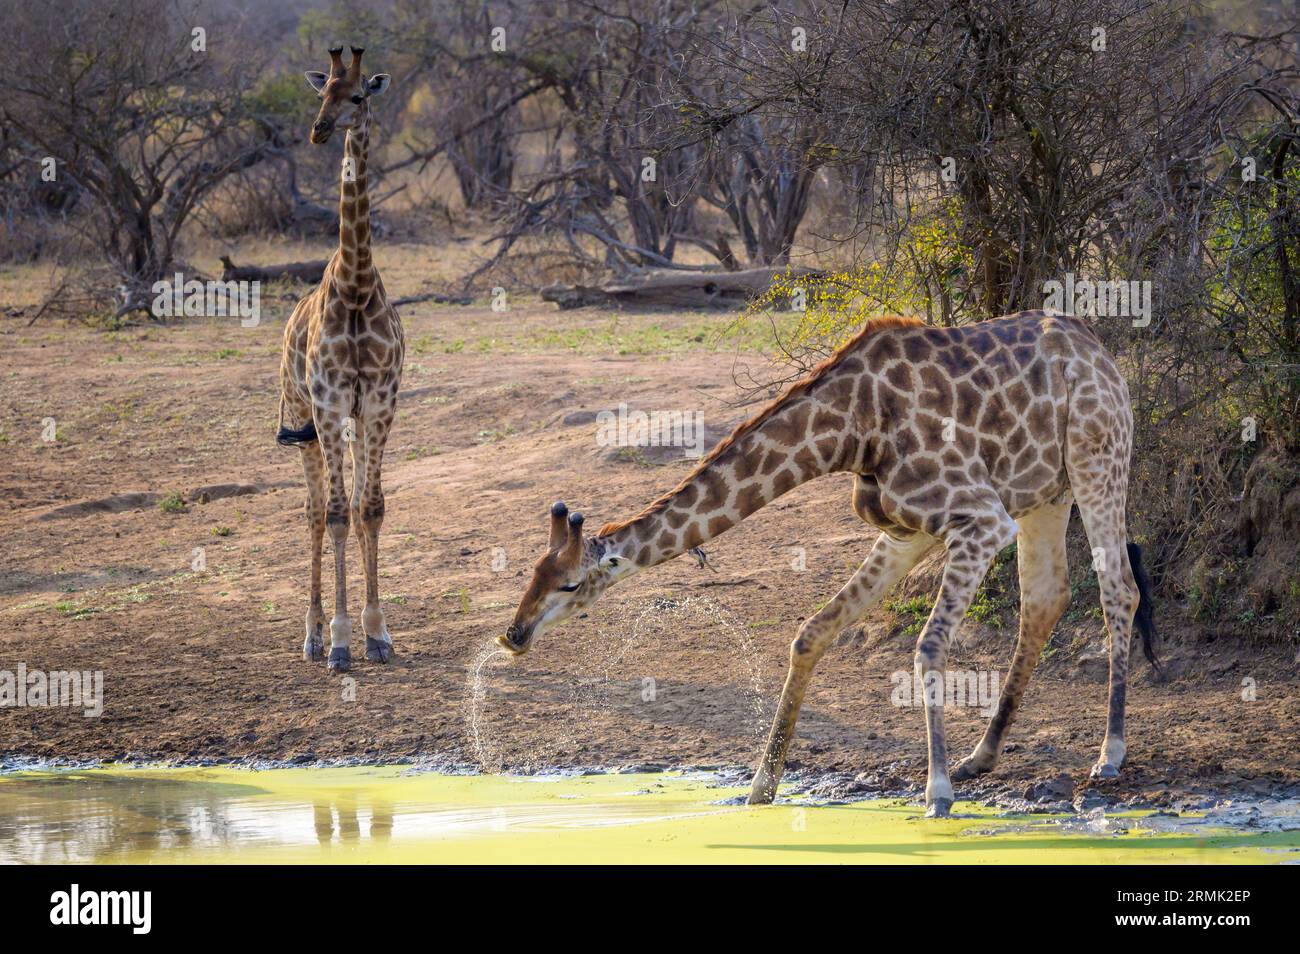 Girafe (Giraffa camelopardalis) levant la tête après avoir bu dans un trou d'eau et pulvérisé de l'eau autour de la bouche, parc national Kruger, Afrique du Sud Banque D'Images